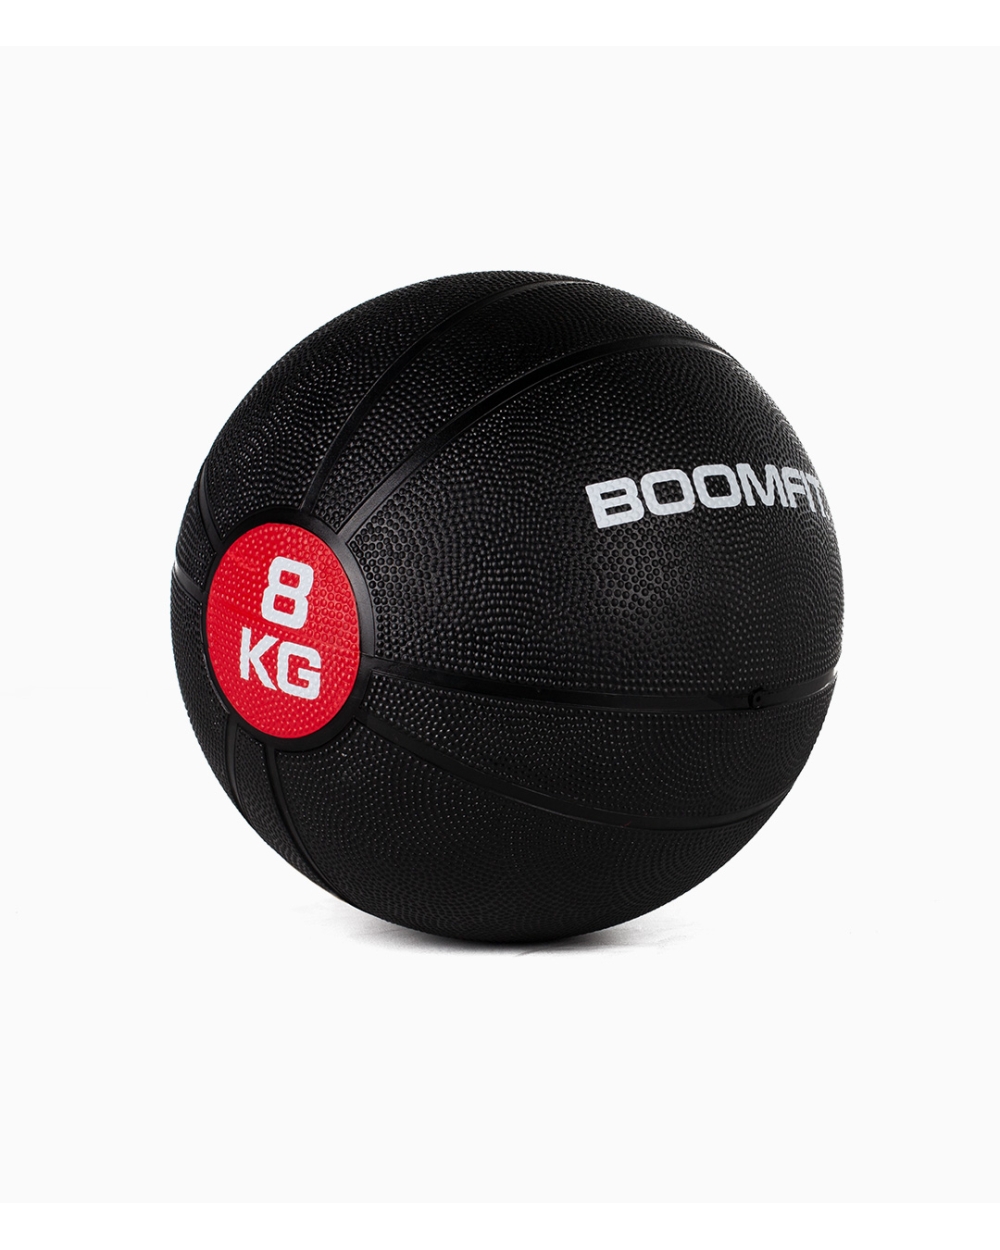 Balón Medicinal Boomfit 8kg - Bola Medicinal 8kg - Boomfit  MKP